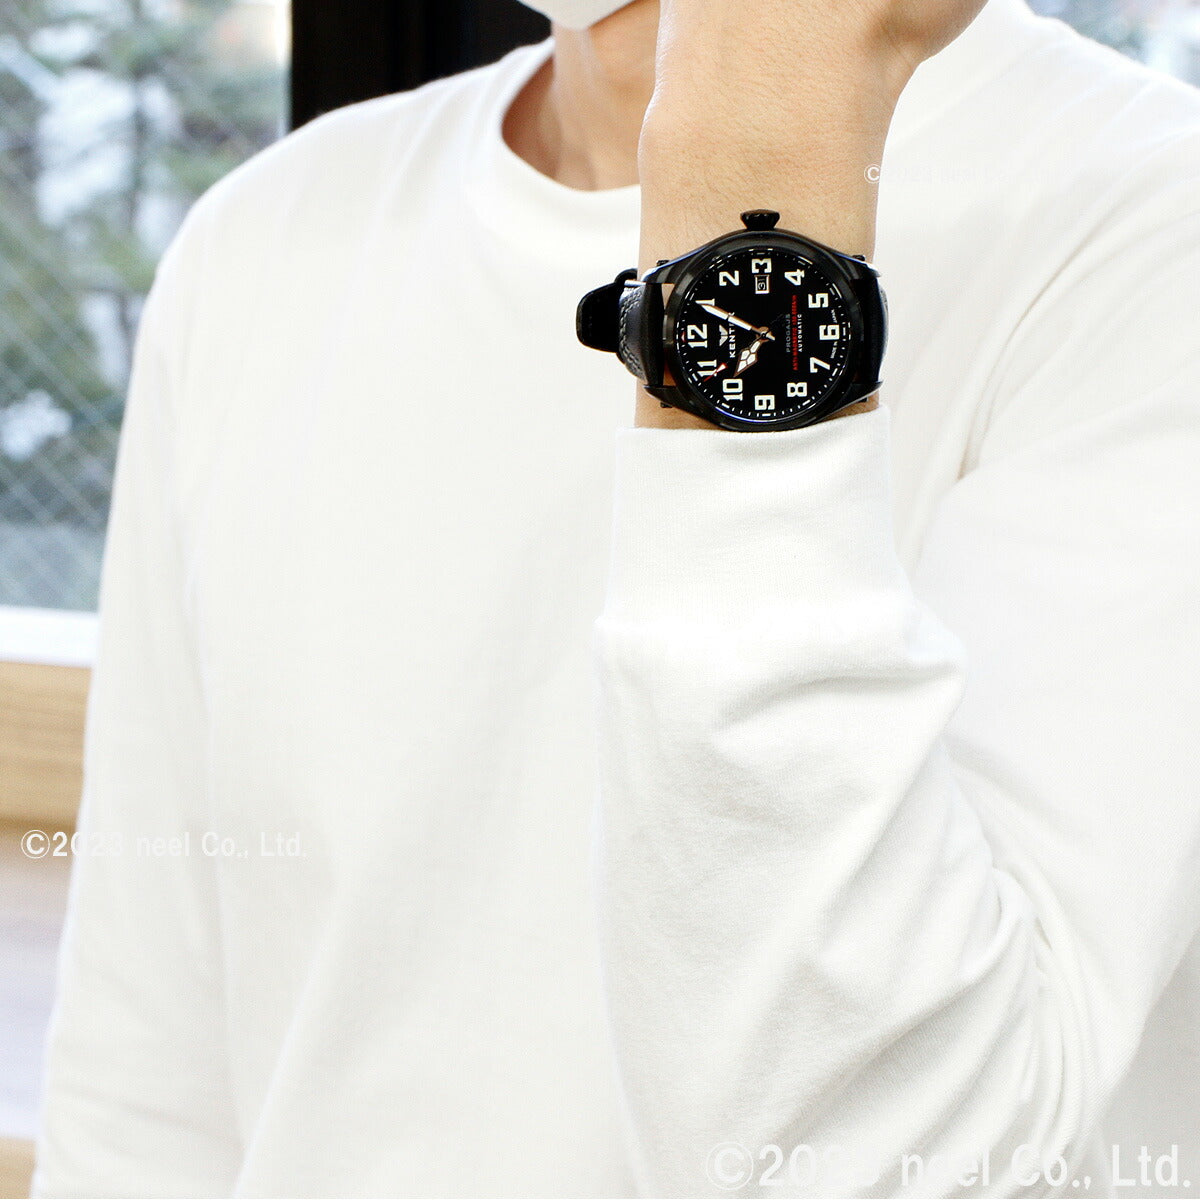 ケンテックス KENTEX 腕時計 時計 メンズ 耐磁時計 自動巻き プロガウス 日本製 S769X-3